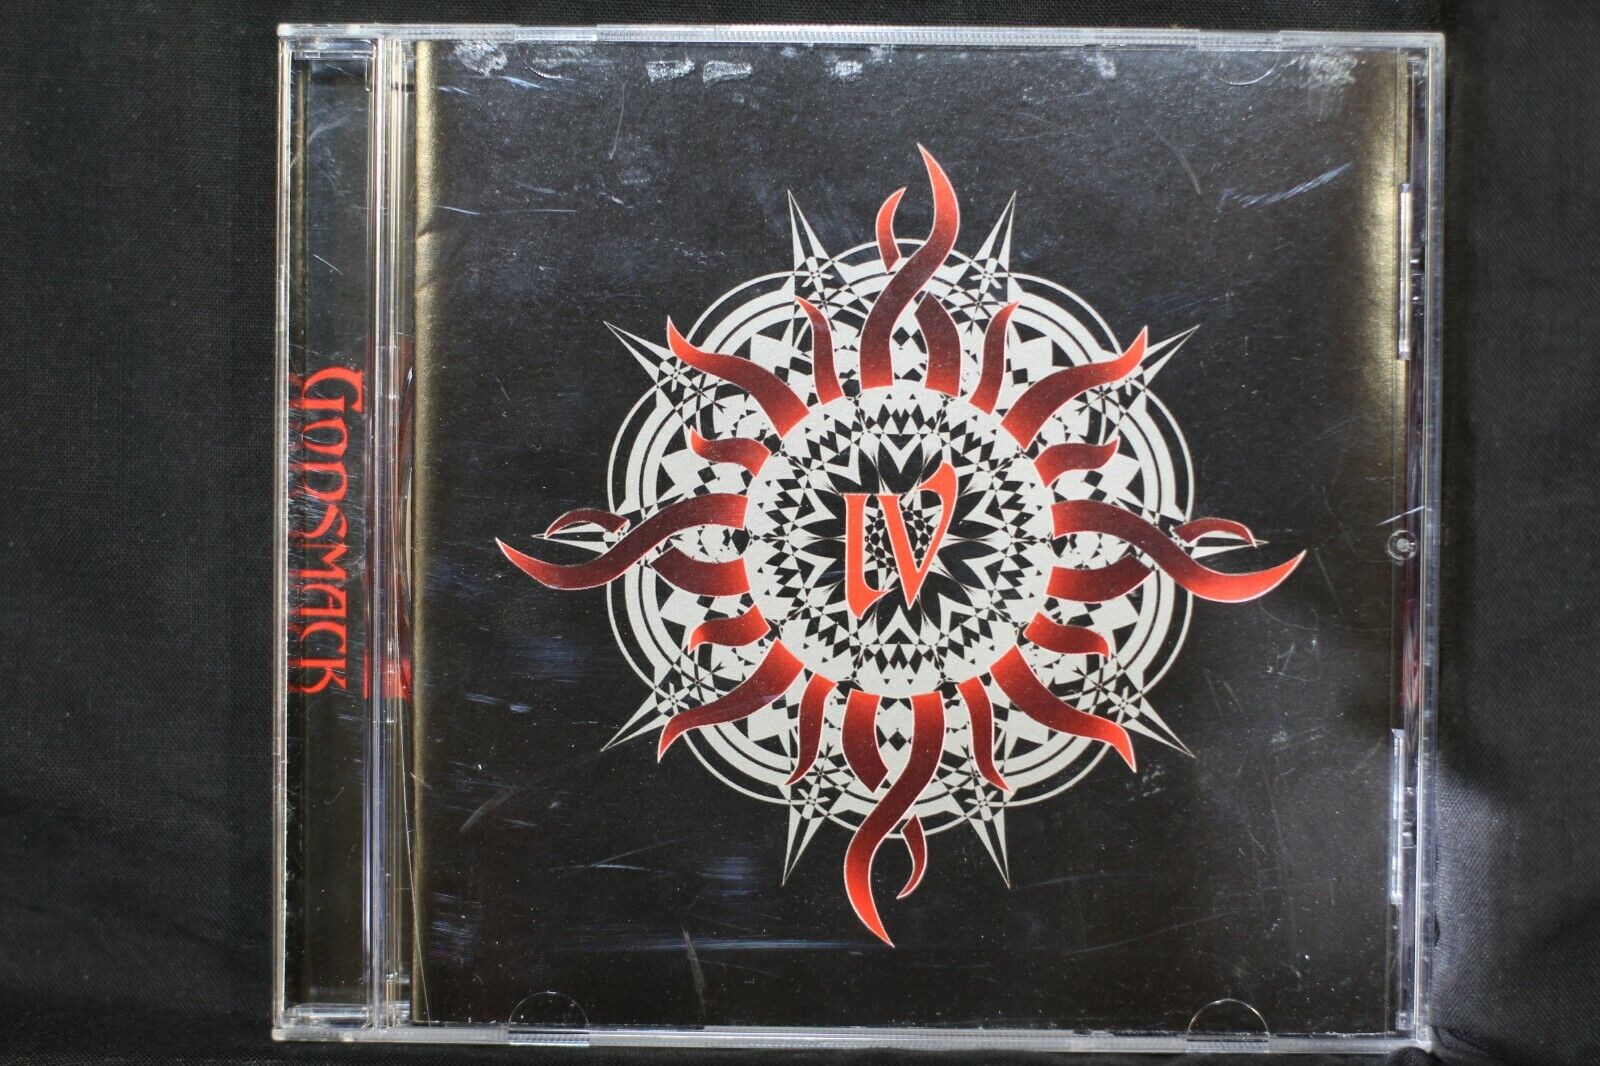  Godsmack ‎– IV  - (C810)